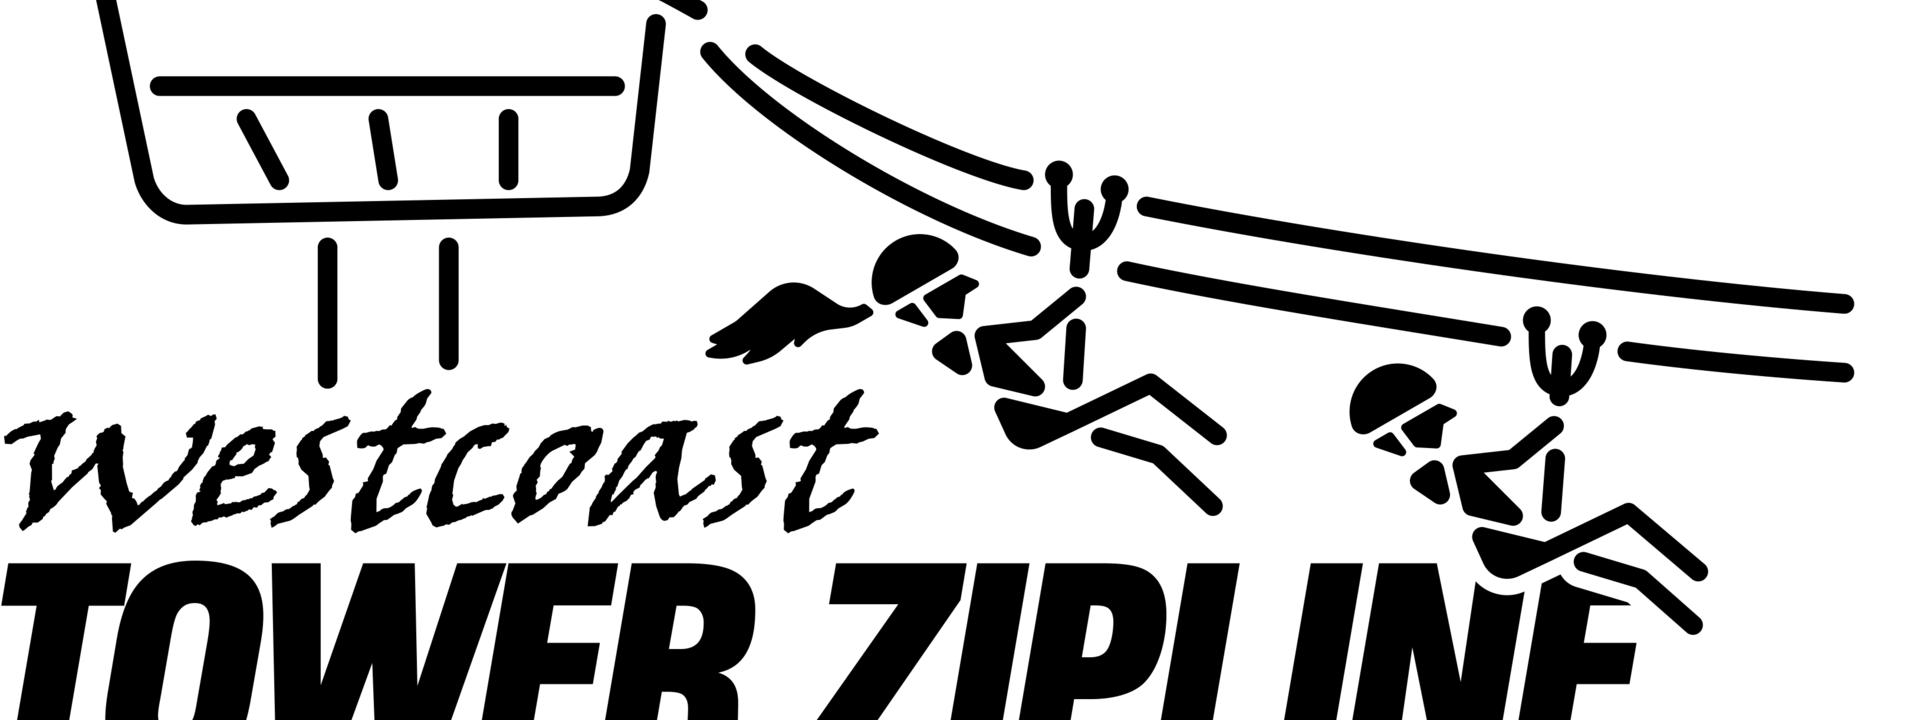 West Coast Tower Zipline Logo Black (1)-1.png